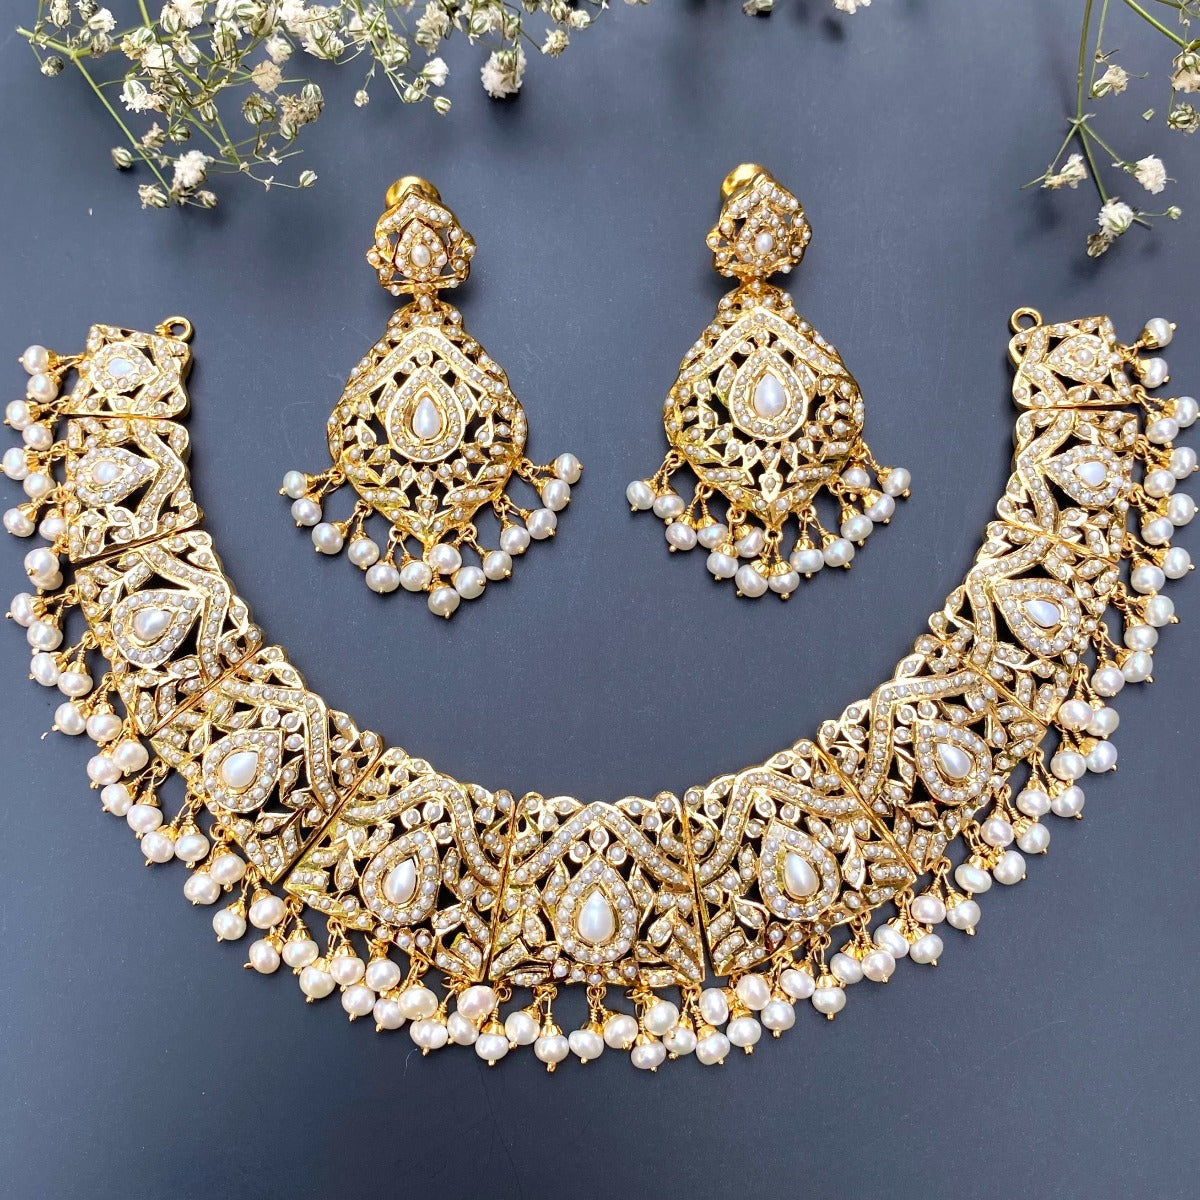 traditional punjabi jewelry in pearls